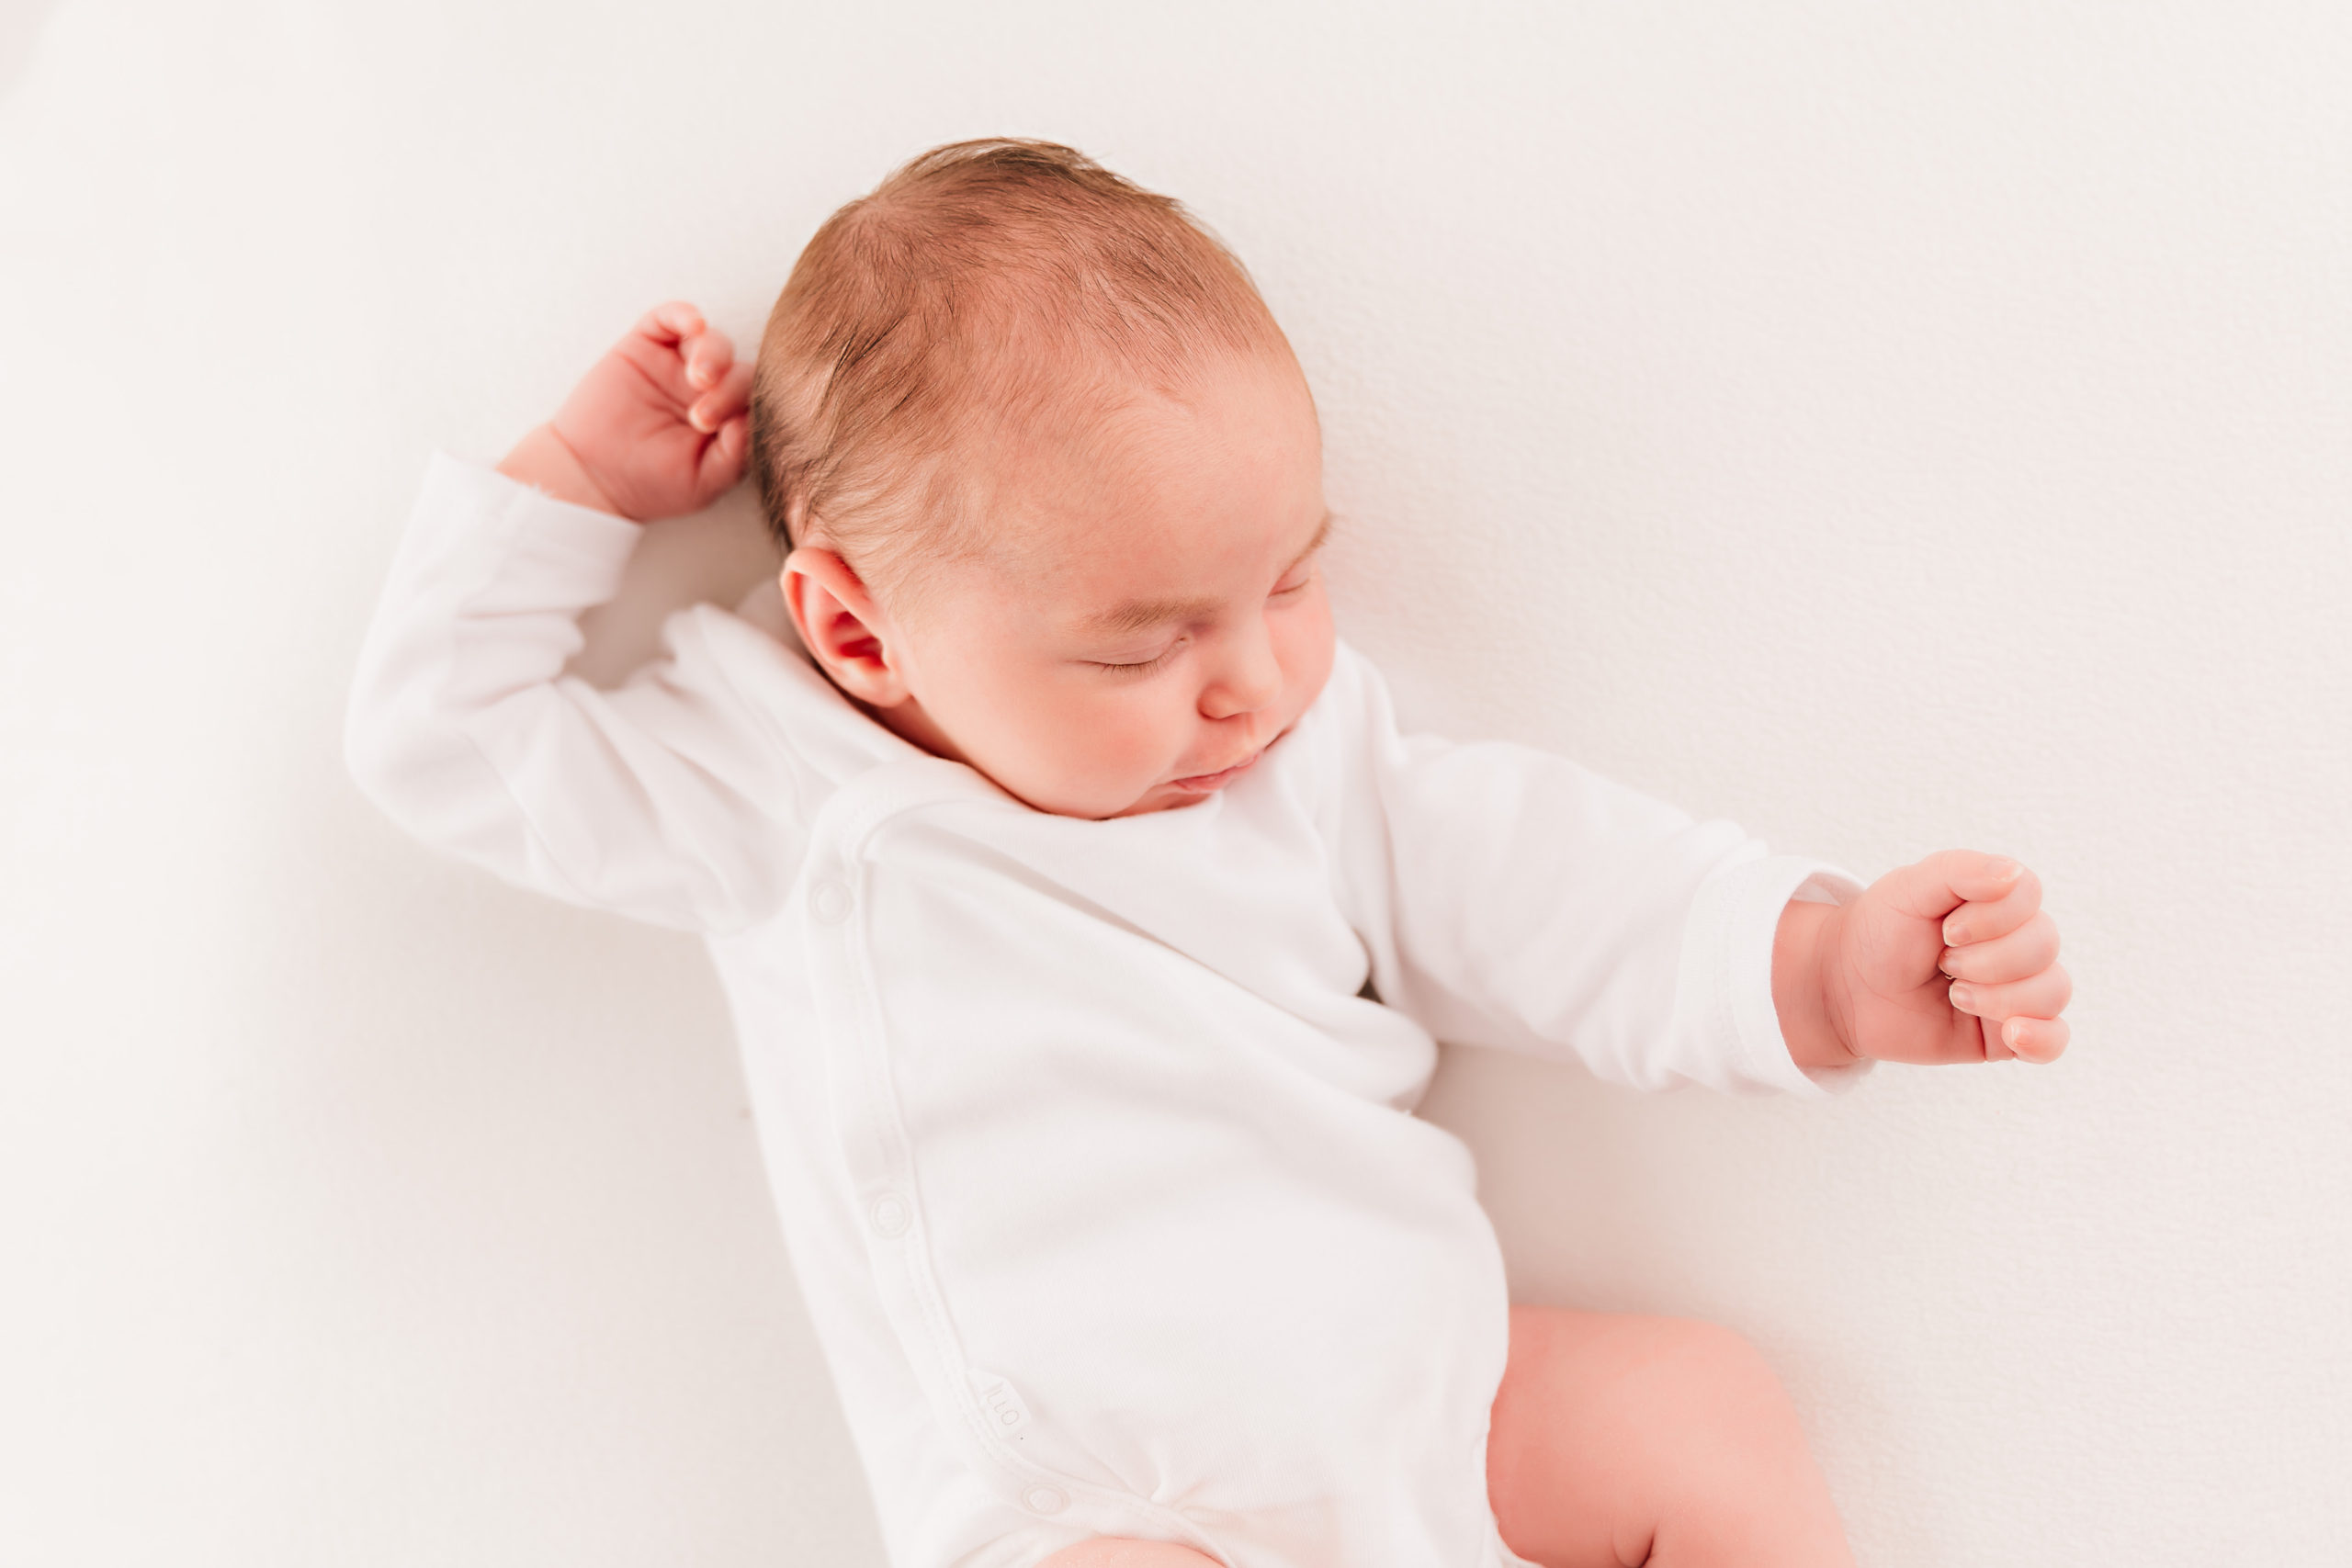 Fotoshooting mit neugeborenem Baby kurz nach der Geburt mit Familie im Studio mit Familienfotografin Julia Pitz, Babyfotograf in Rodgau, Frankfurt, Hanau und Aschaffenburg